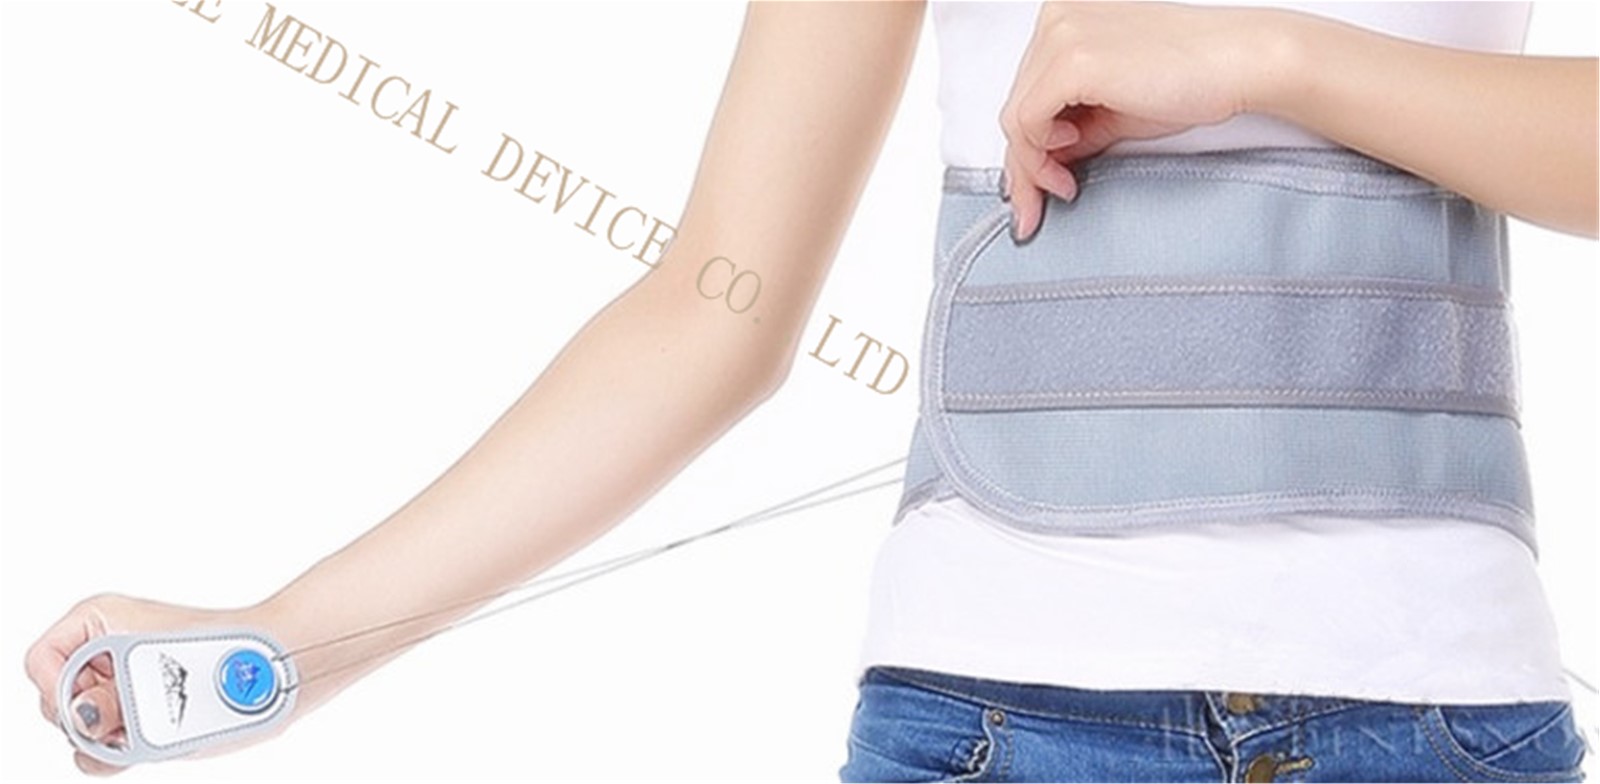 StringLite drawstring Medical Lumbar Back Belt tourmaline waist support brace